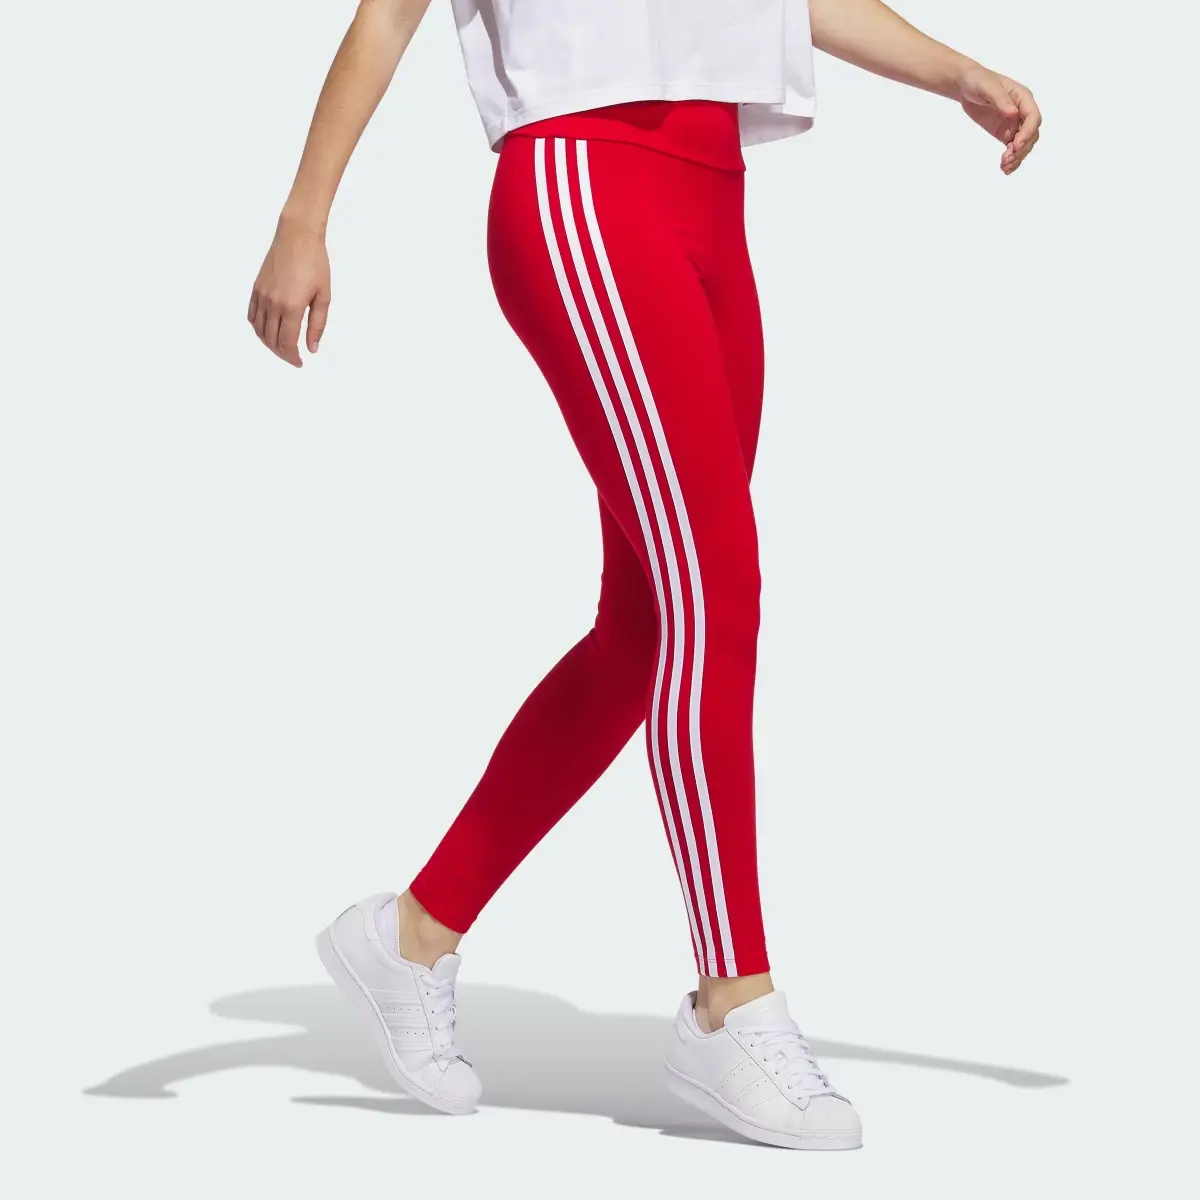 Adidas 3-Stripes Leggings. 3